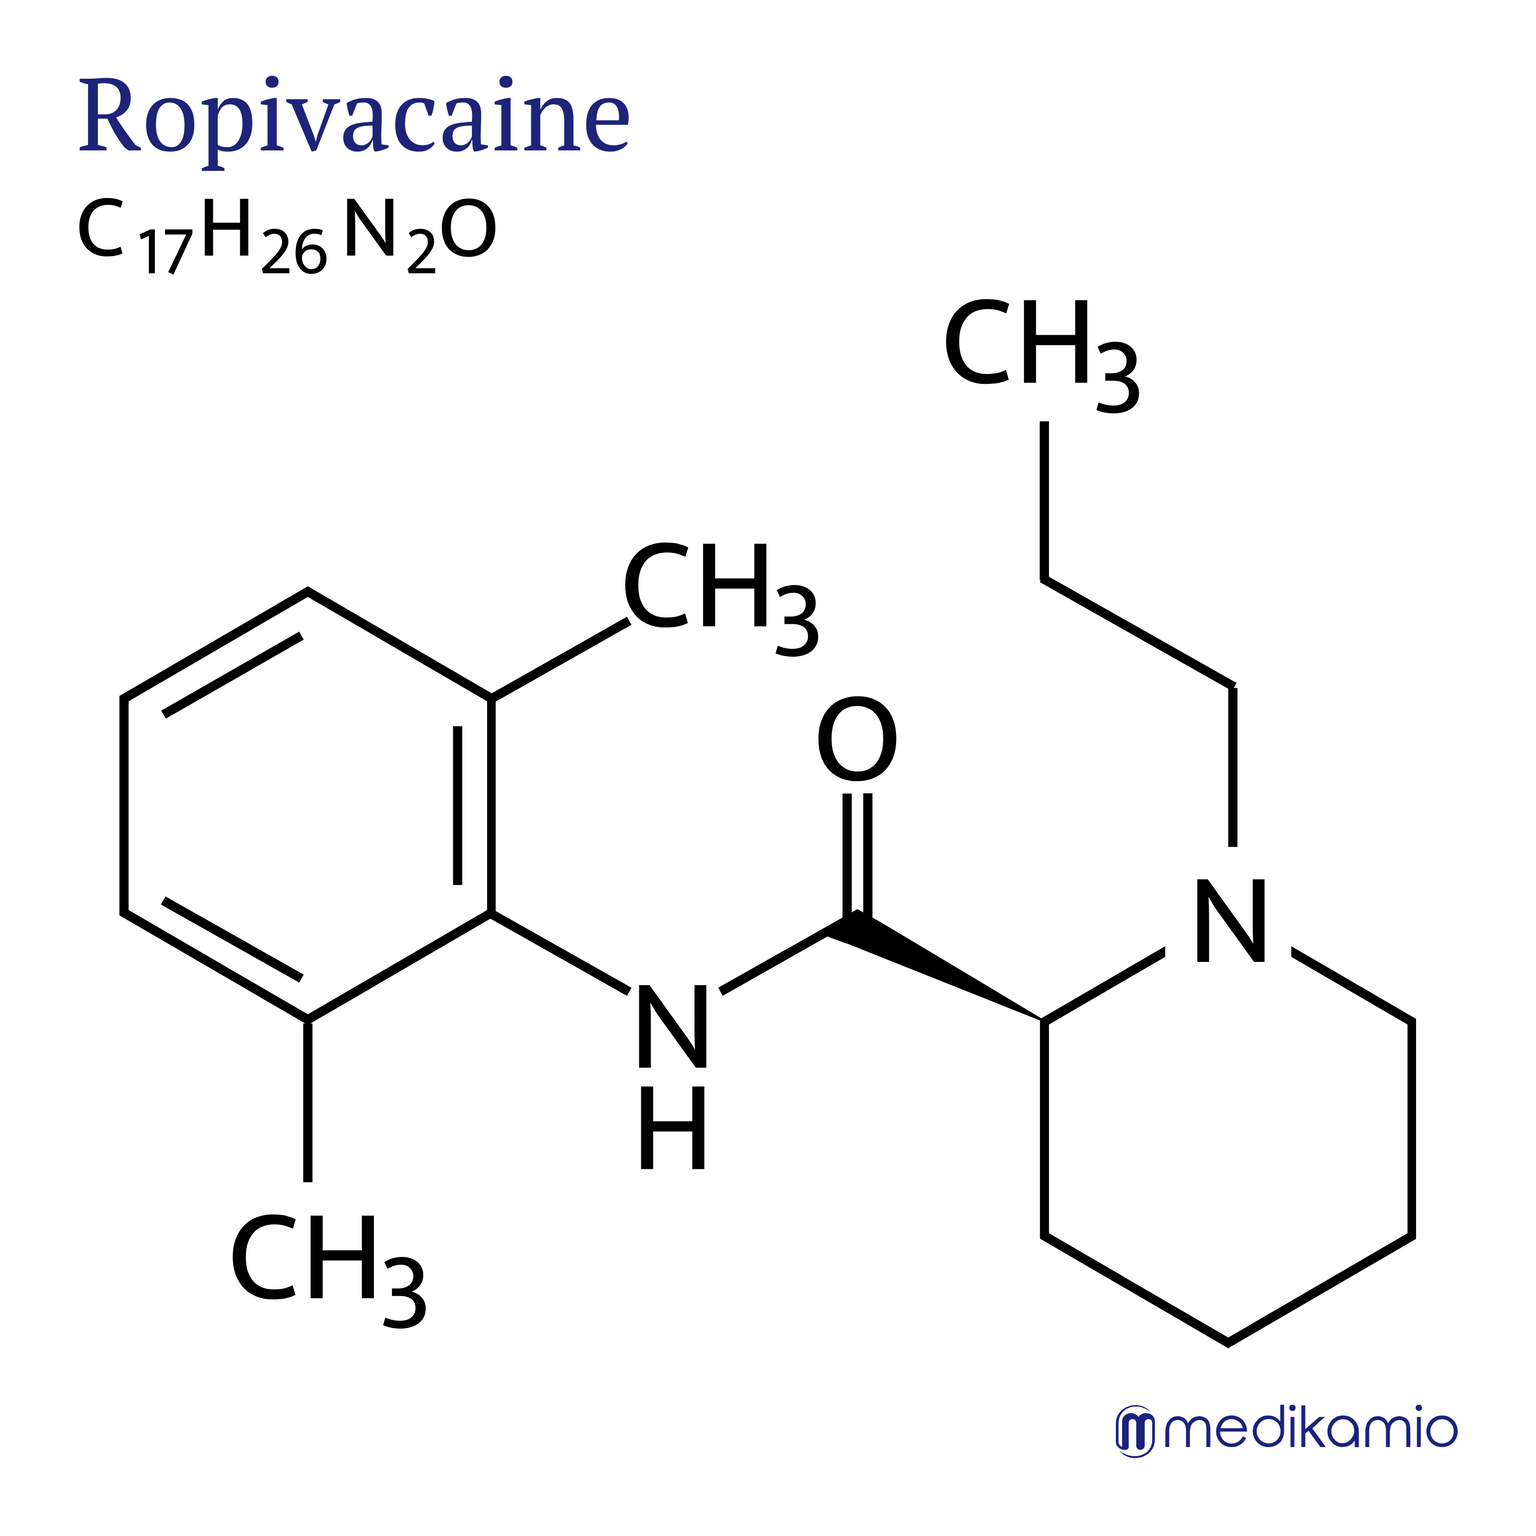 Fórmula estrutural gráfica da substância ativa ropivcaína